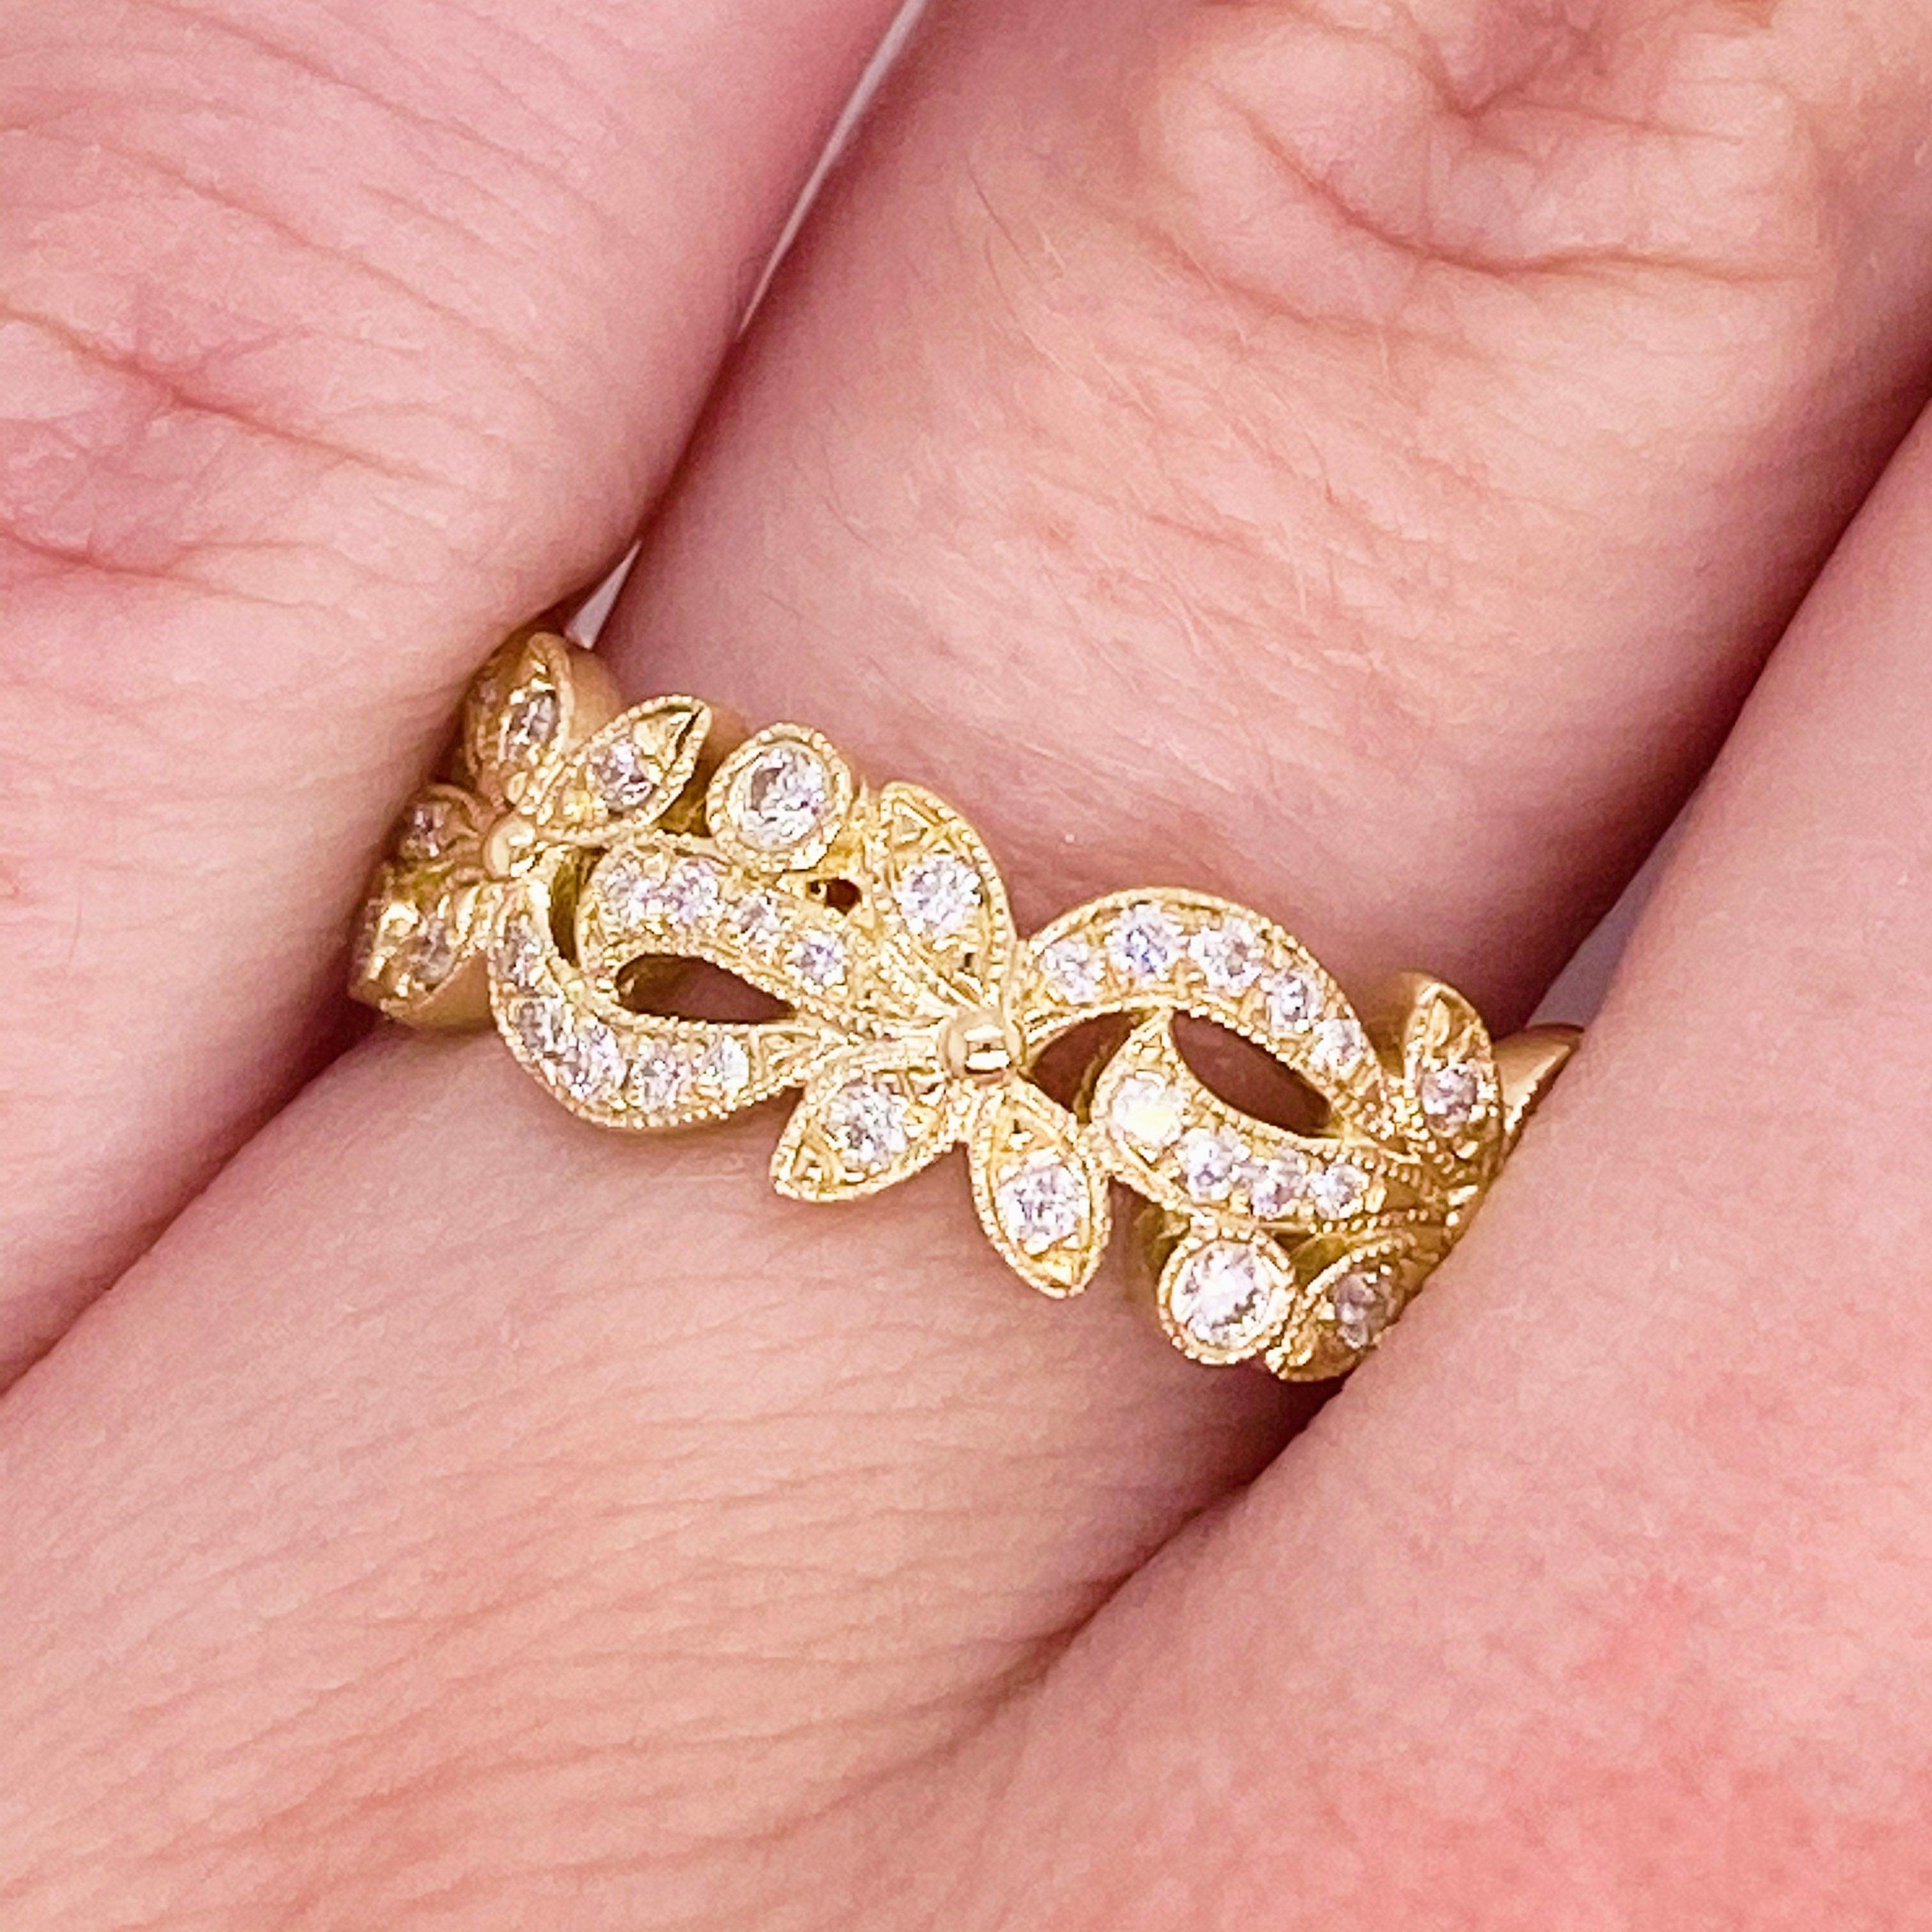 Diamond Flower Ring, 14 Karat Gold Floral Inspired Stackable Band, LR9229Y45JJ 2